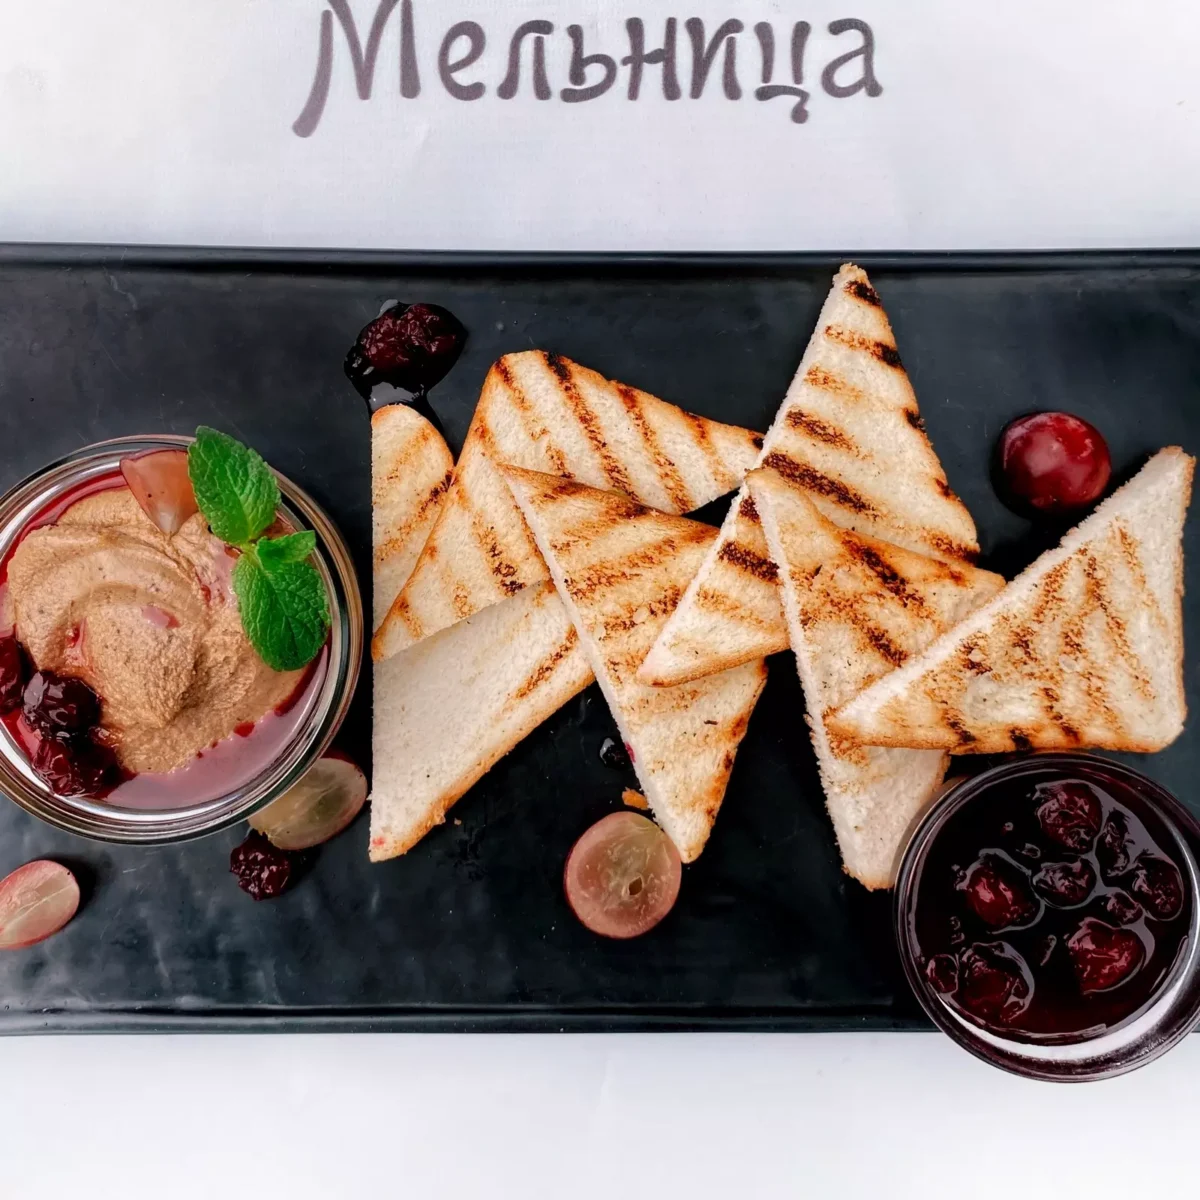 Signature pate • "Melnitsa" restaurant, Kharkiv